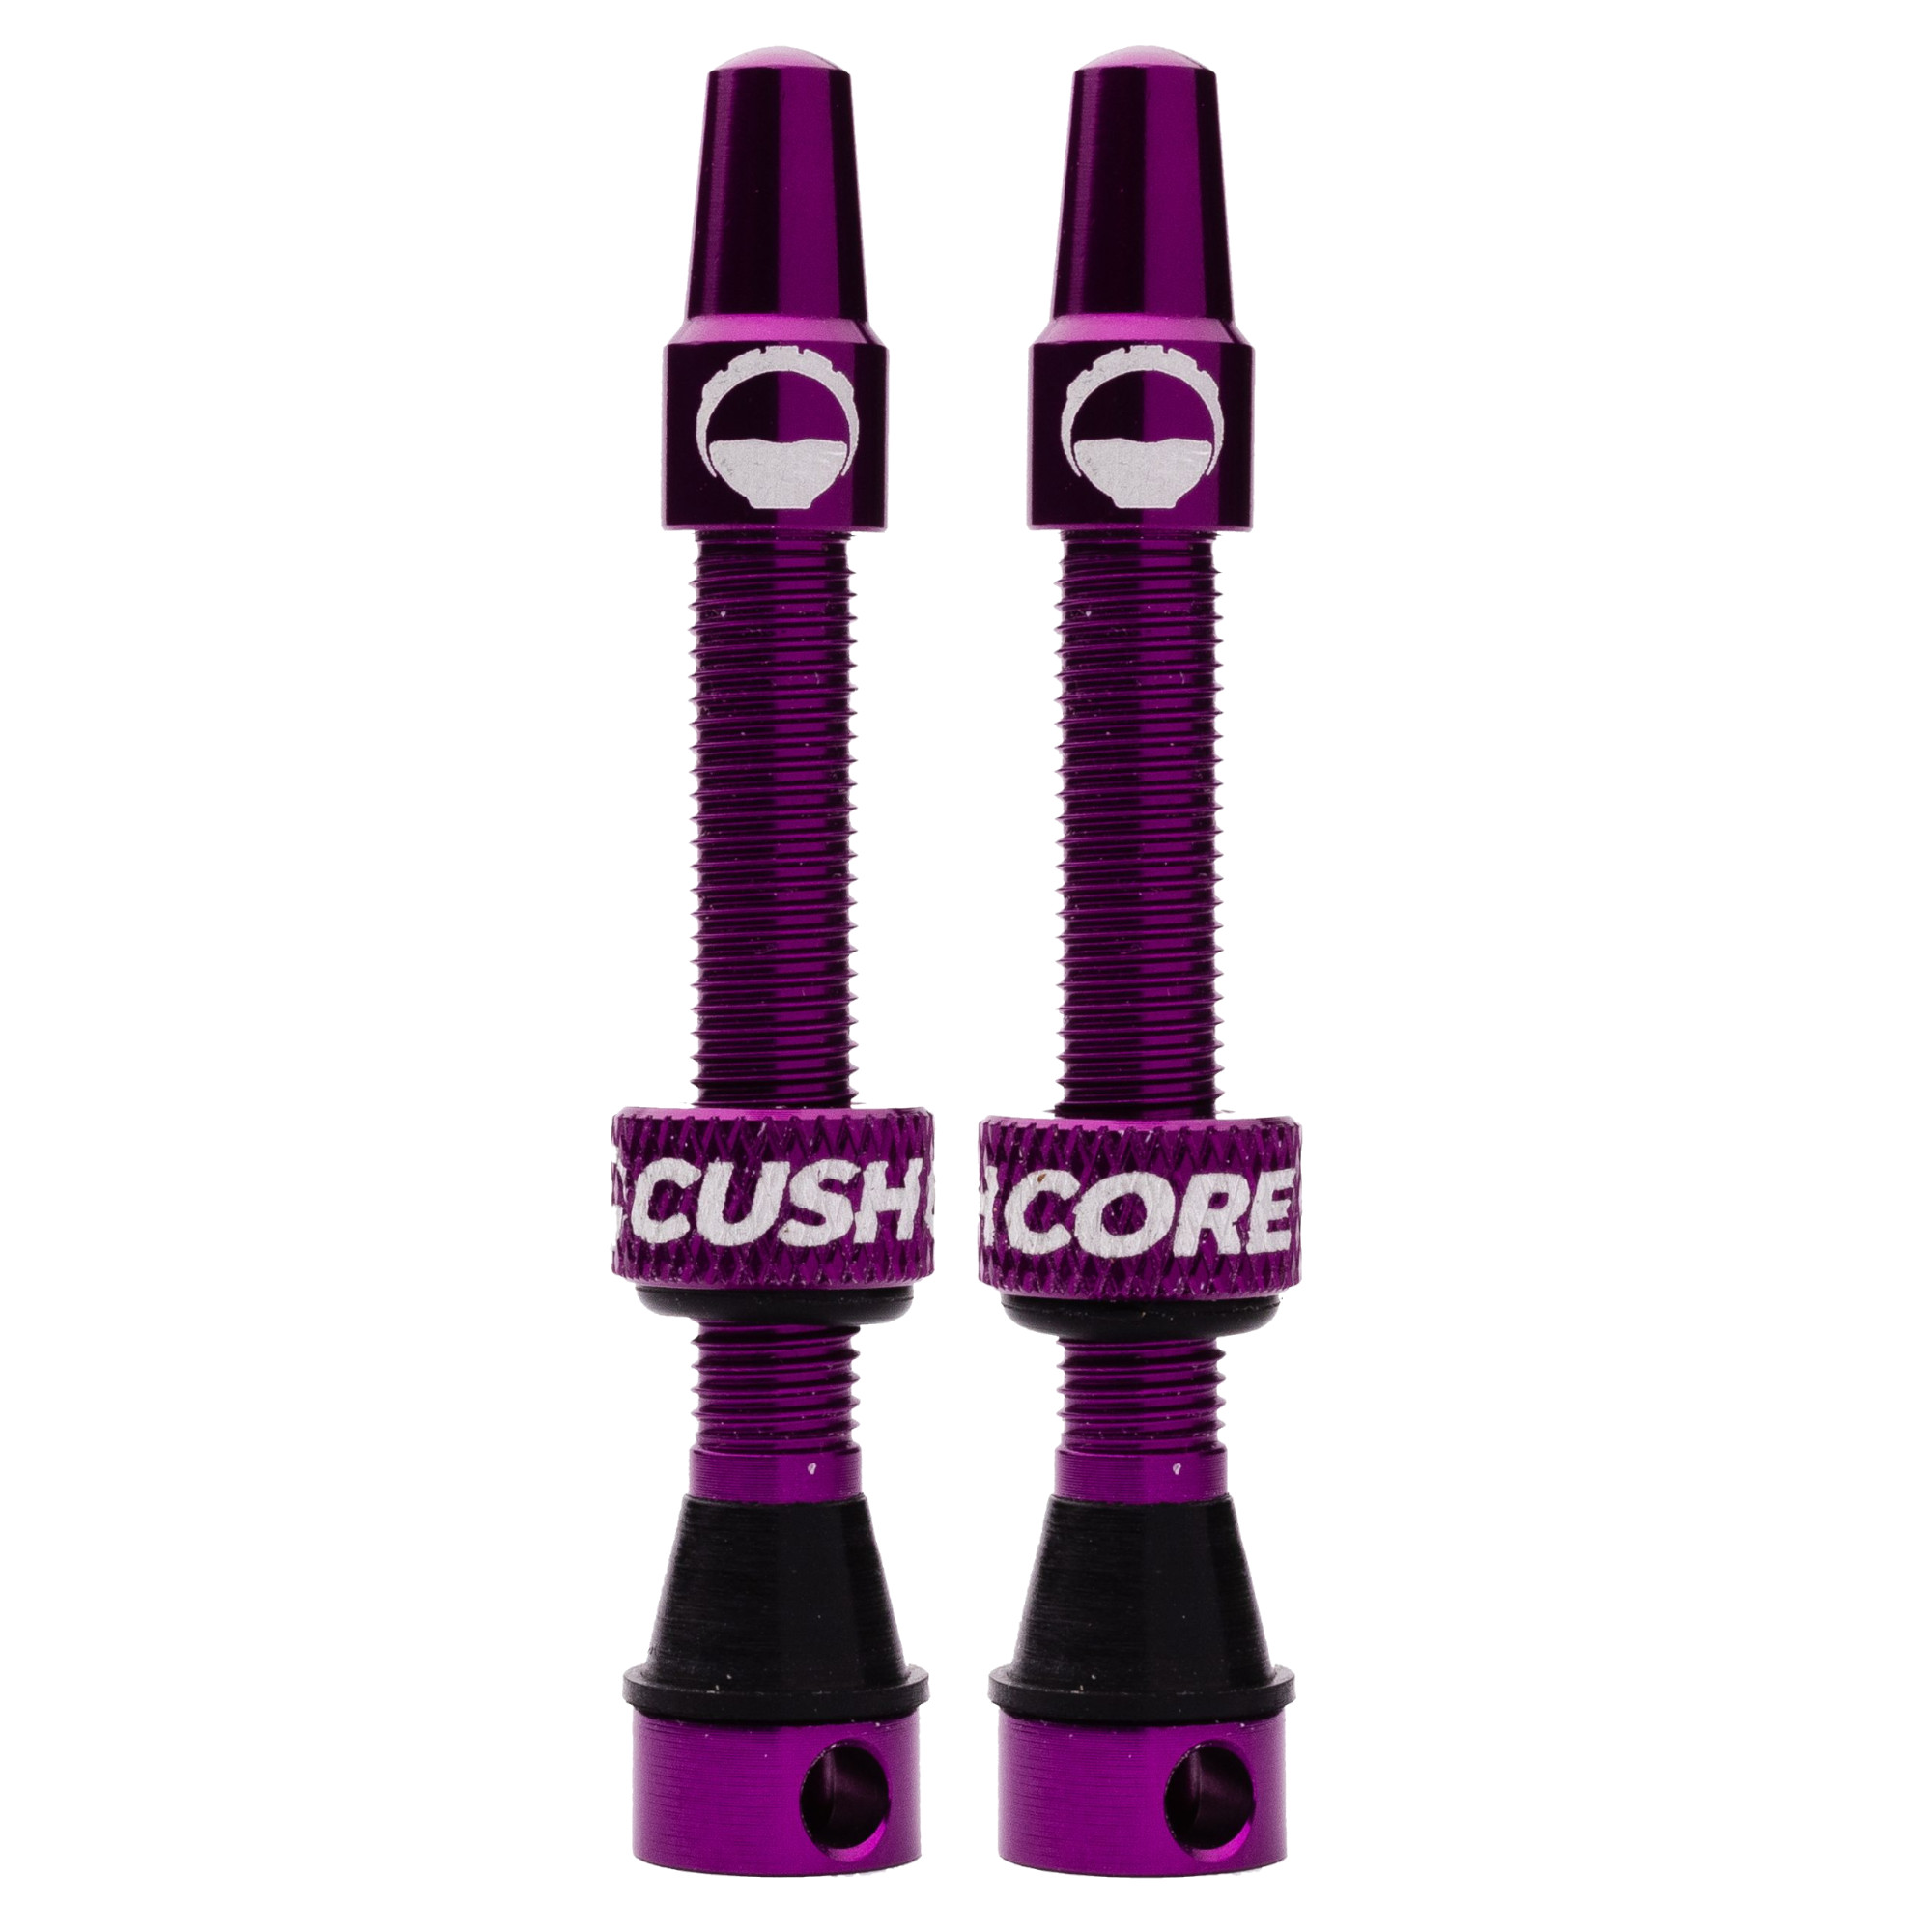 Productfoto van CushCore Tubeless Ventielen Set - 55mm (Paar) - paars